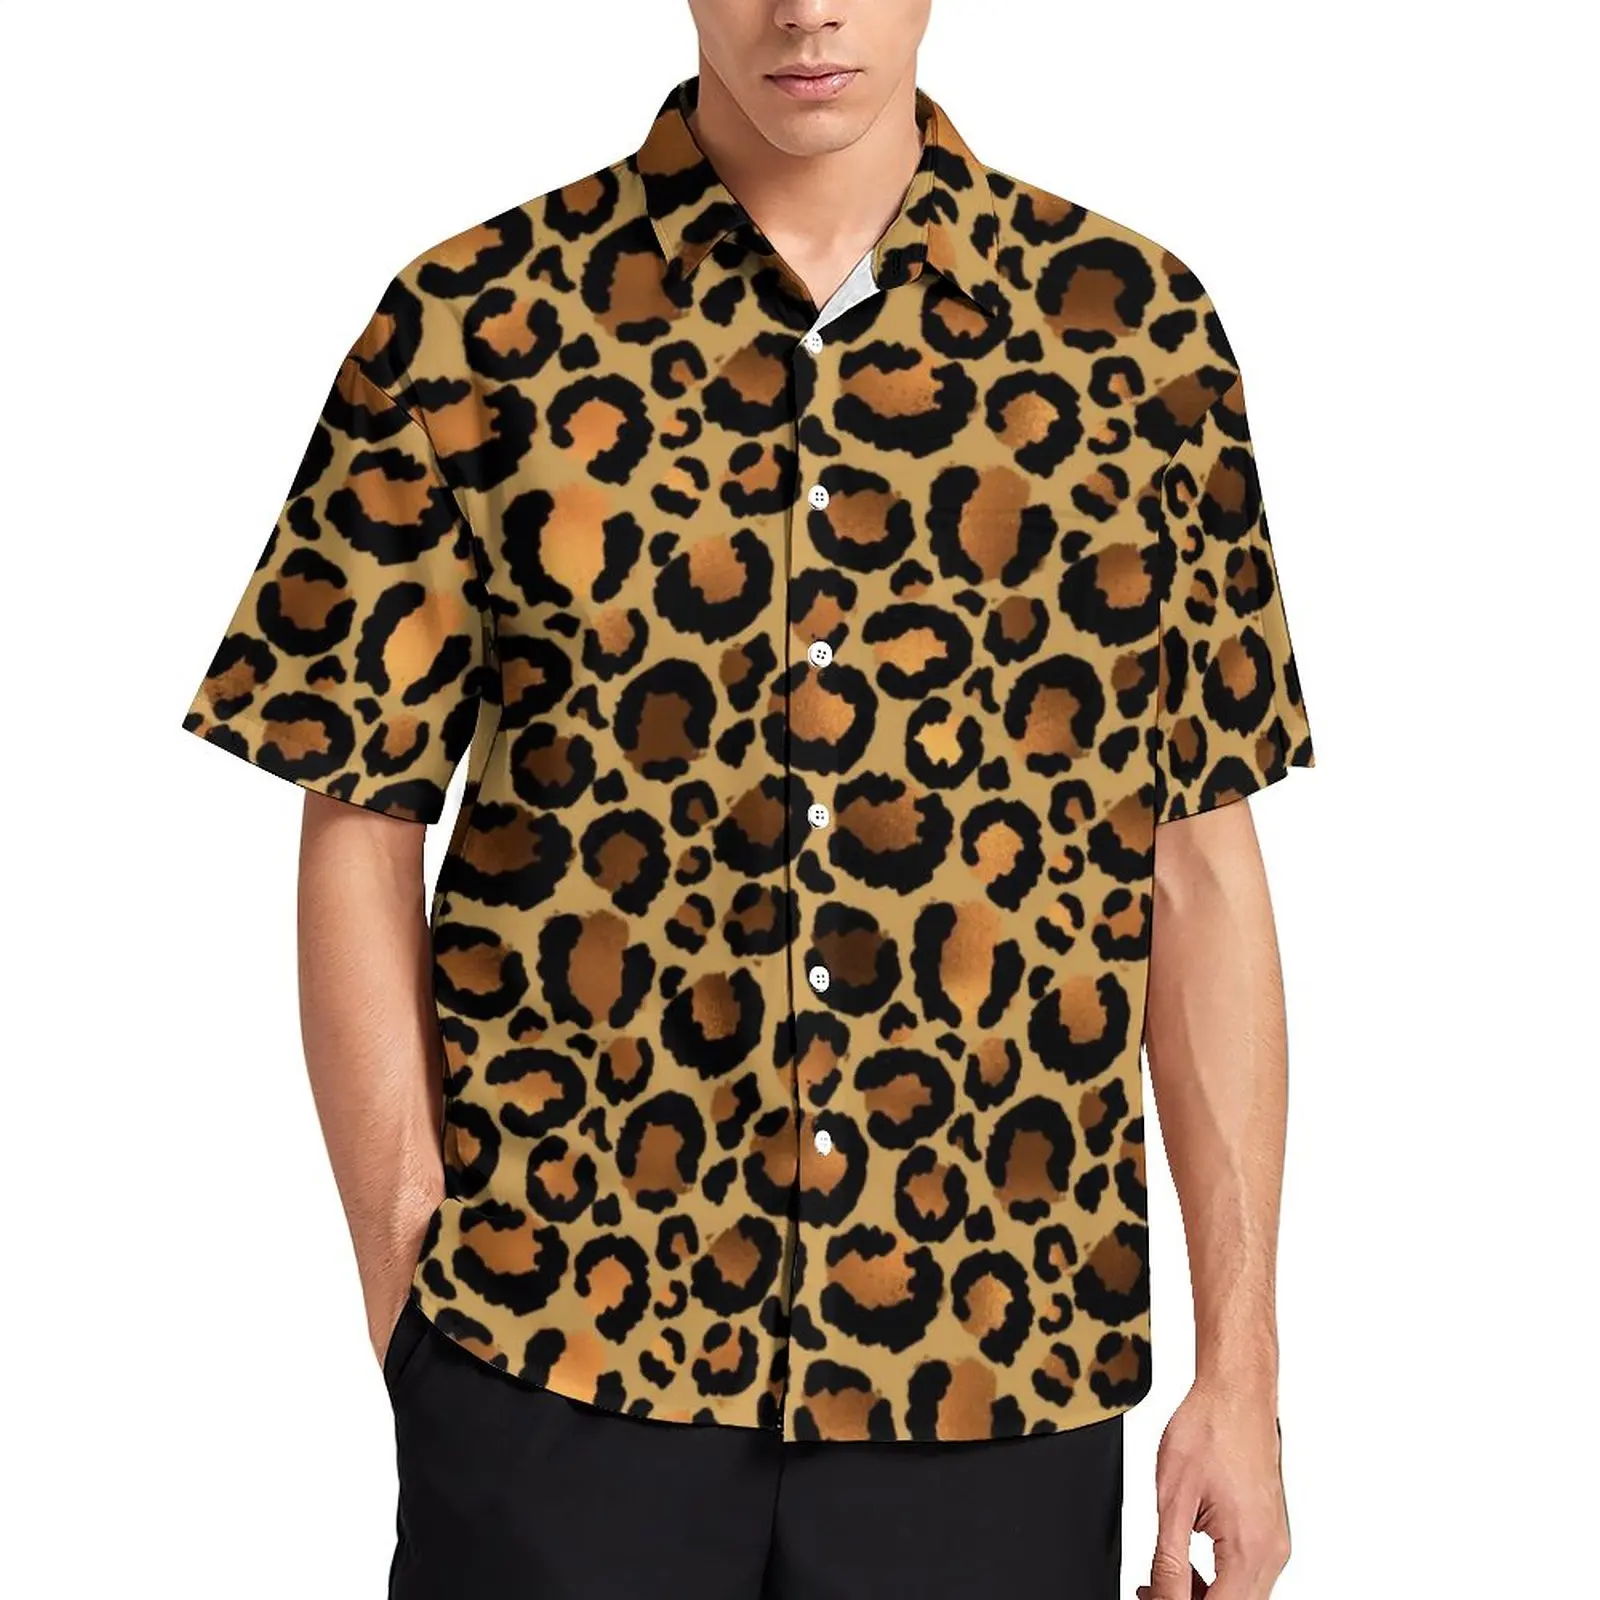 

Повседневная рубашка в стиле диких животных, коричневая пляжная Свободная рубашка в горошек с леопардовым принтом, Гавайские модные блузки, Топ оверсайз с короткими рукавами на заказ